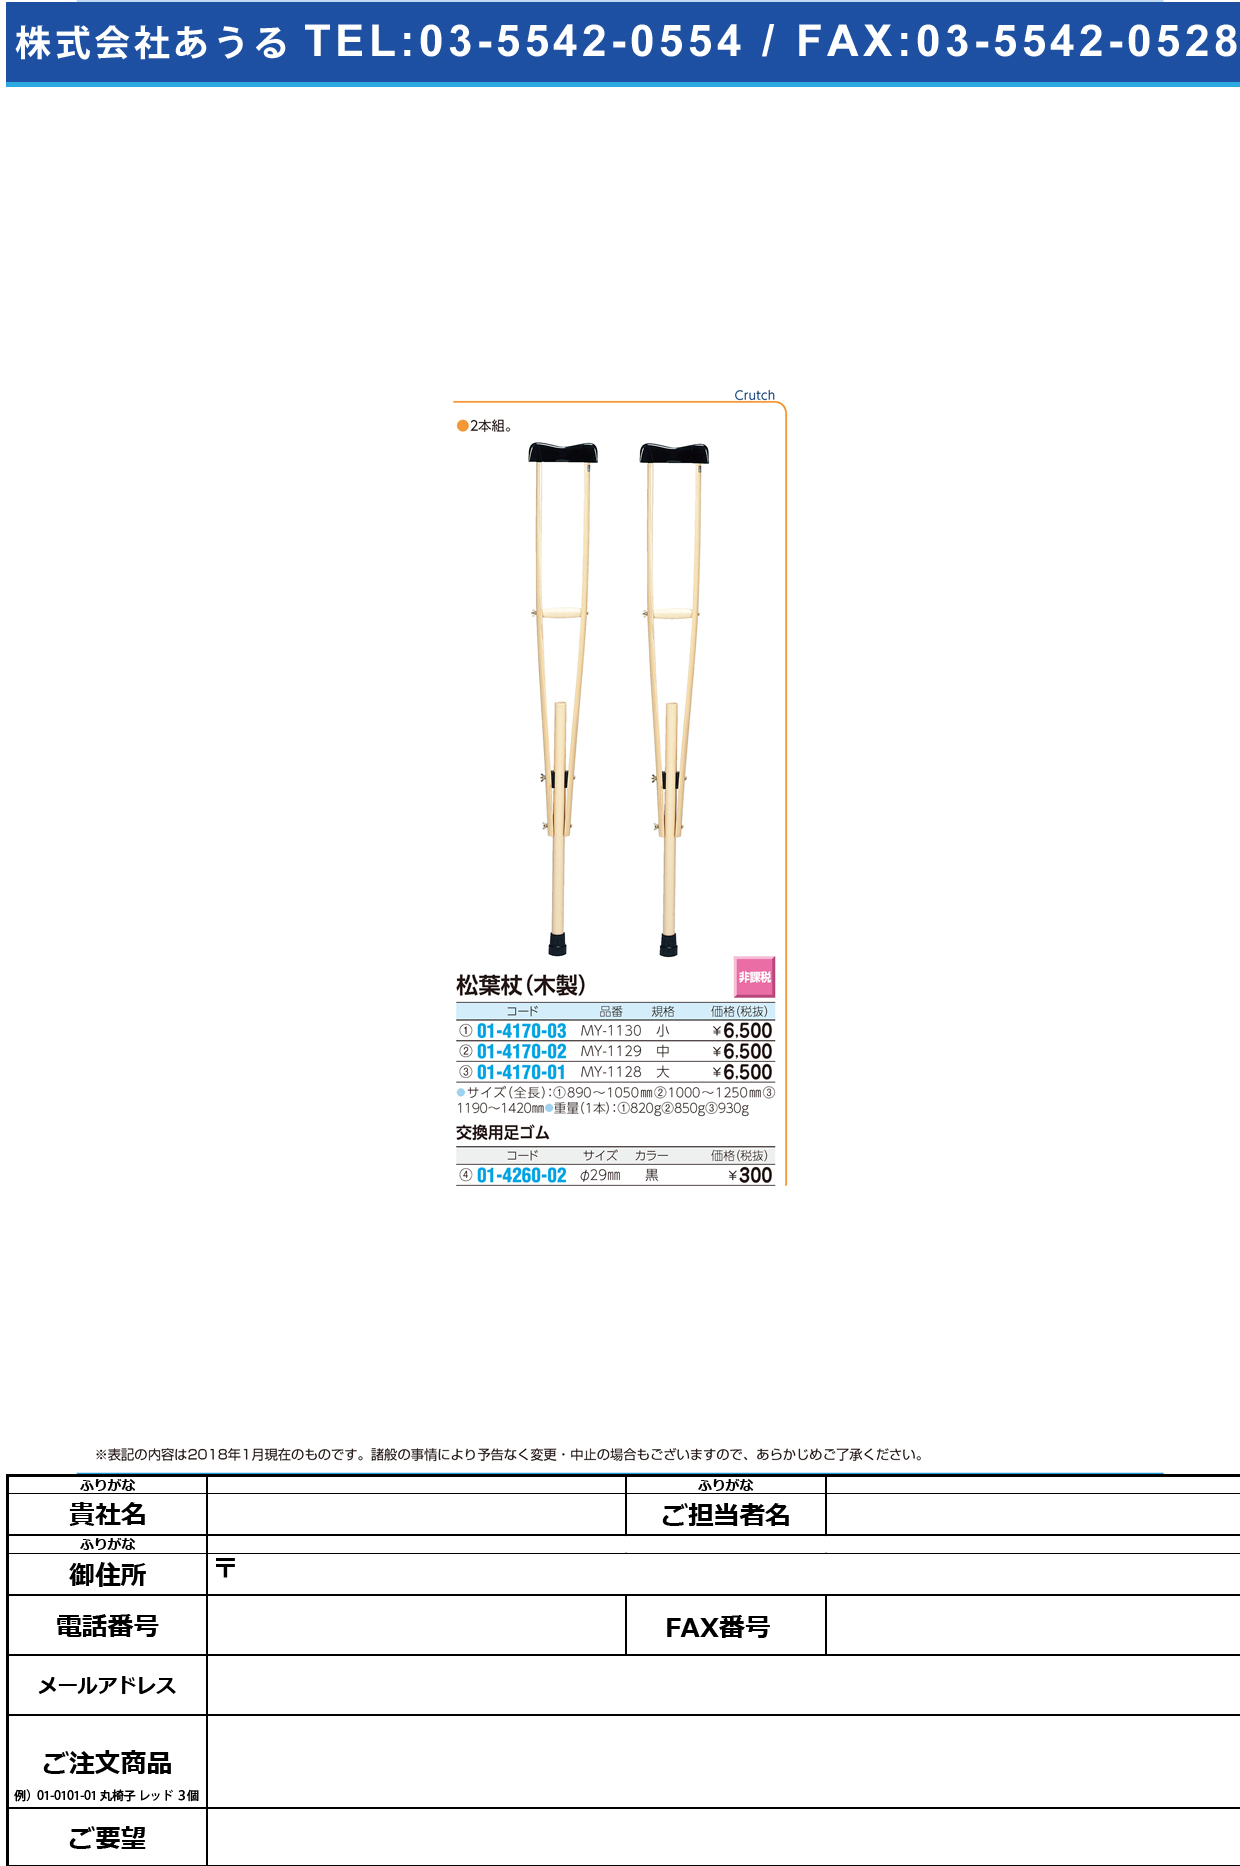 (01-4170-01)松葉杖（木製）大 MY-1128(ﾊﾟｯｷﾝｲﾘ) ﾏﾂﾊﾞｽﾞｴ(ﾓｸｾｲ)ﾀﾞｲ【1組単位】【2018年カタログ商品】